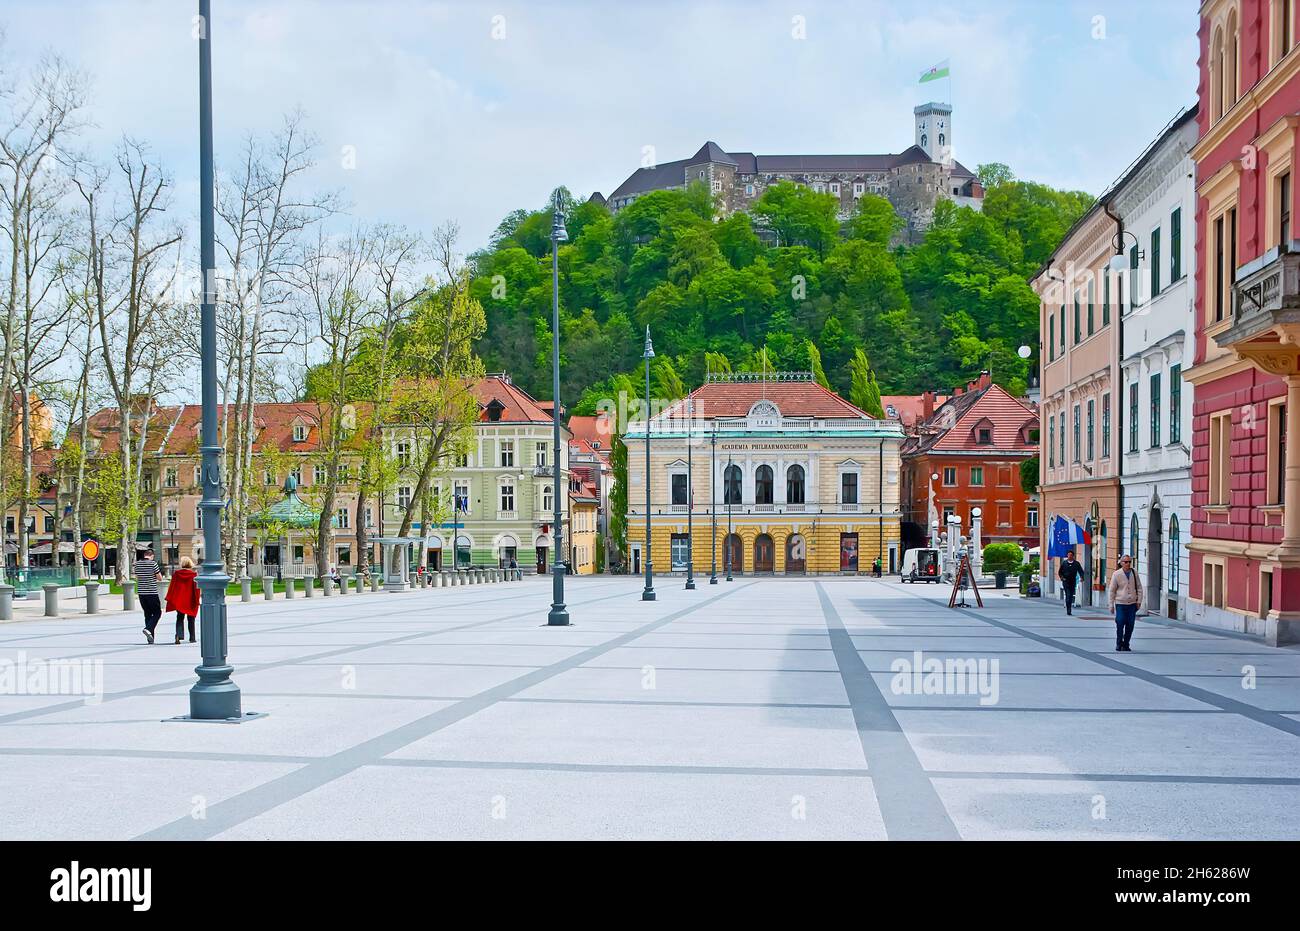 Piazza dei Congressi storica con vista su case cittadine colorate, Filarmonica slovena e il Castello di Lubibljanski Grad in cima alla collina del Castello di Lubiana Foto Stock